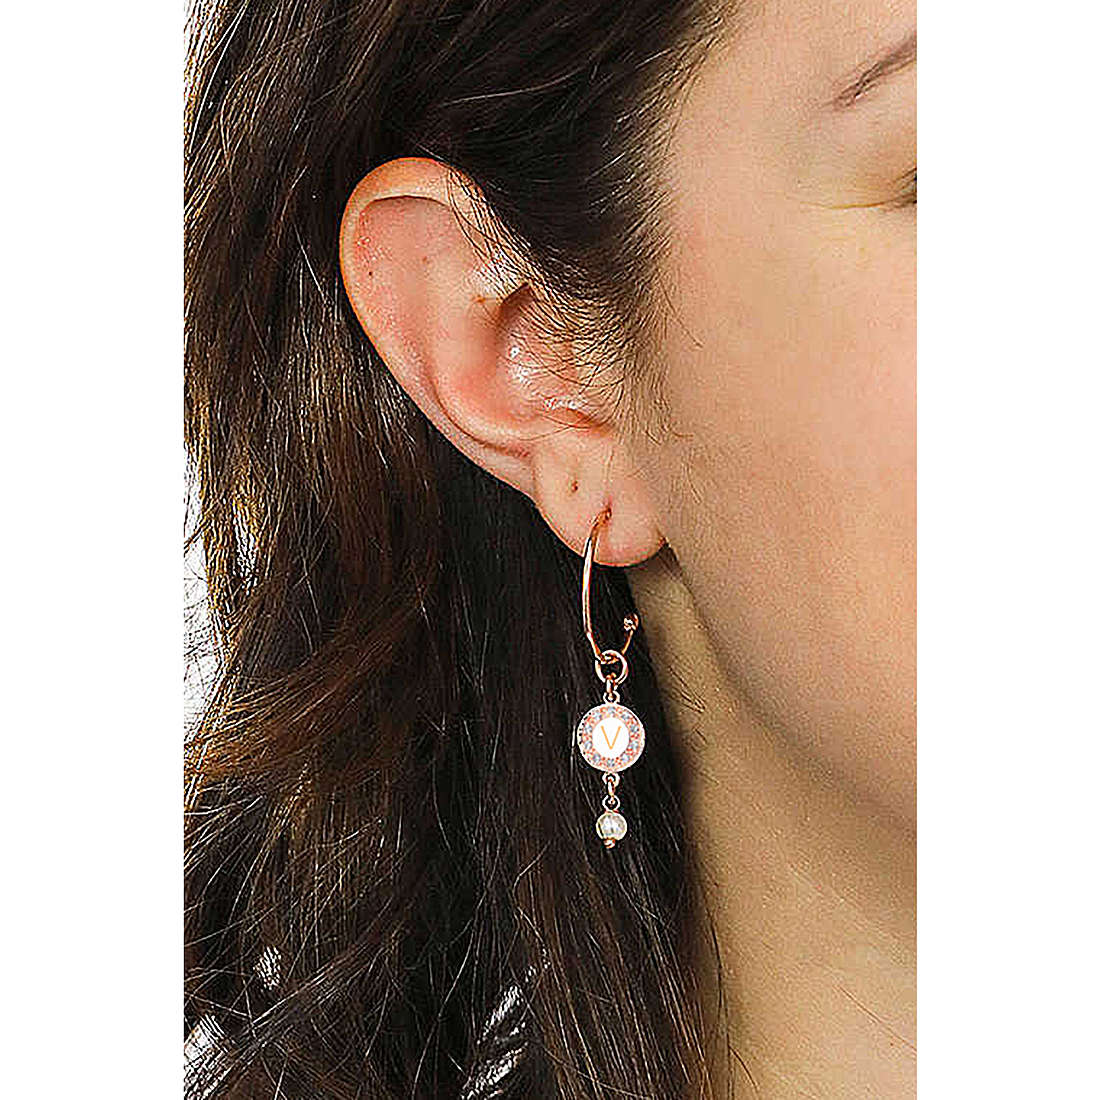 Dvccio earrings Kelly woman OTRESAGR-v wearing